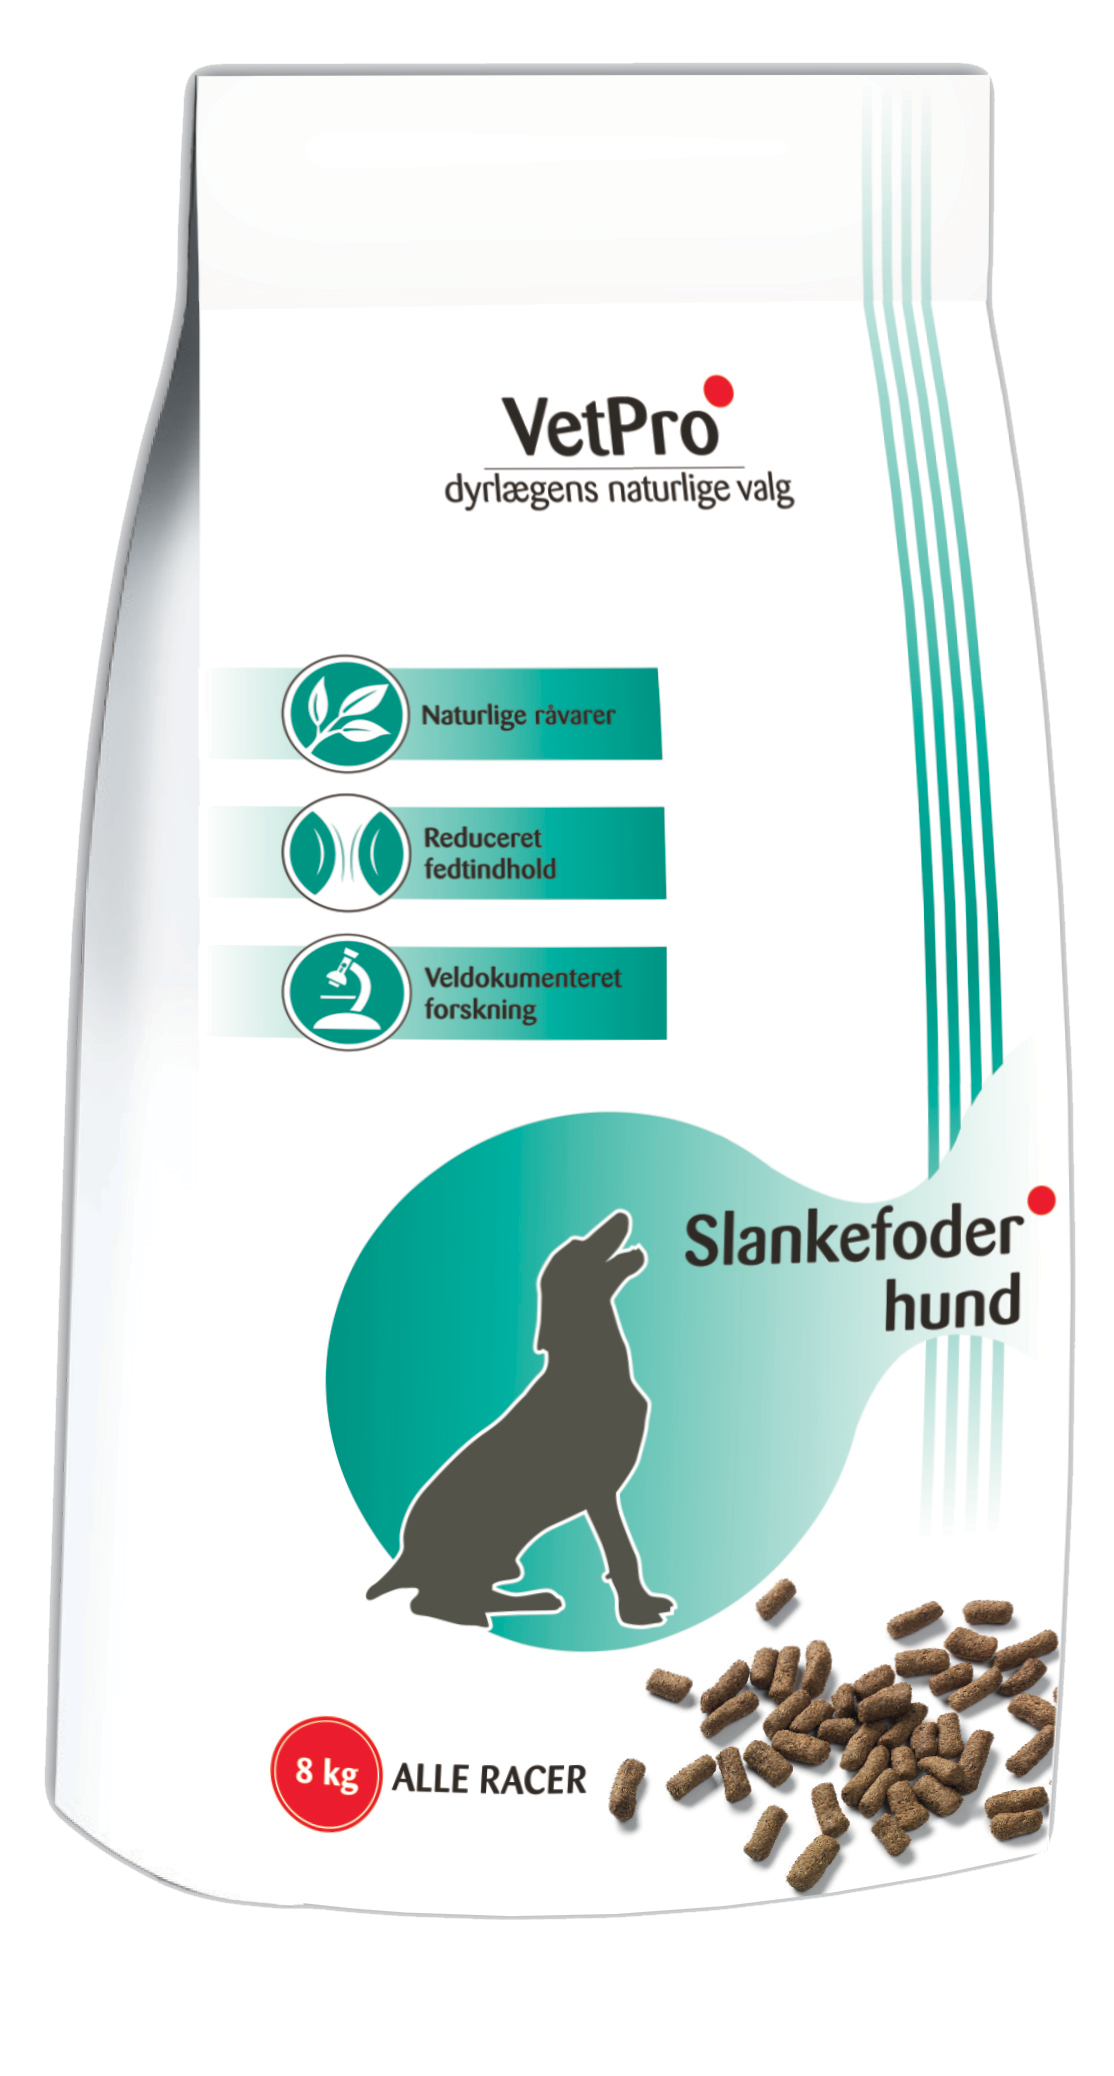 Køb VetPro Slankefoder Hund hos VetPlanet | Priser 359 kr.